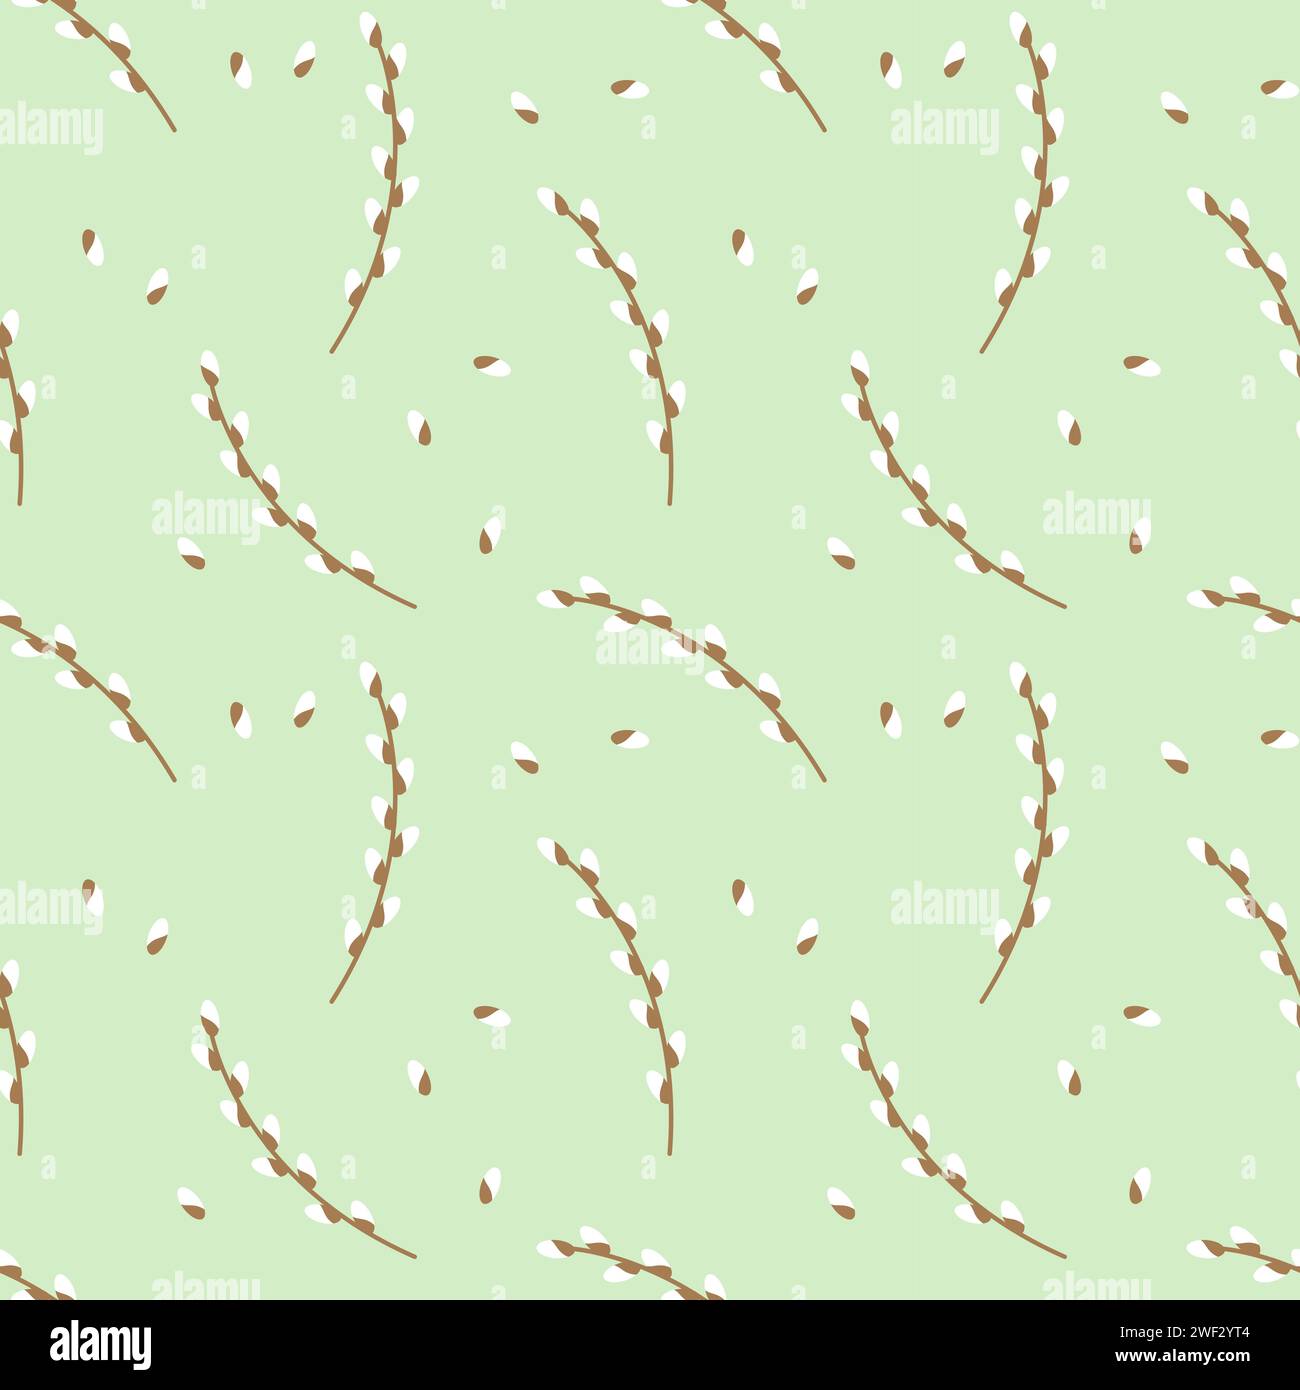 L'image vectorielle présente un motif répétitif de branches de saule orné de petits bourgeons sur fond vert pastel doux, évoquant le sens du printemps. Illustration de Vecteur